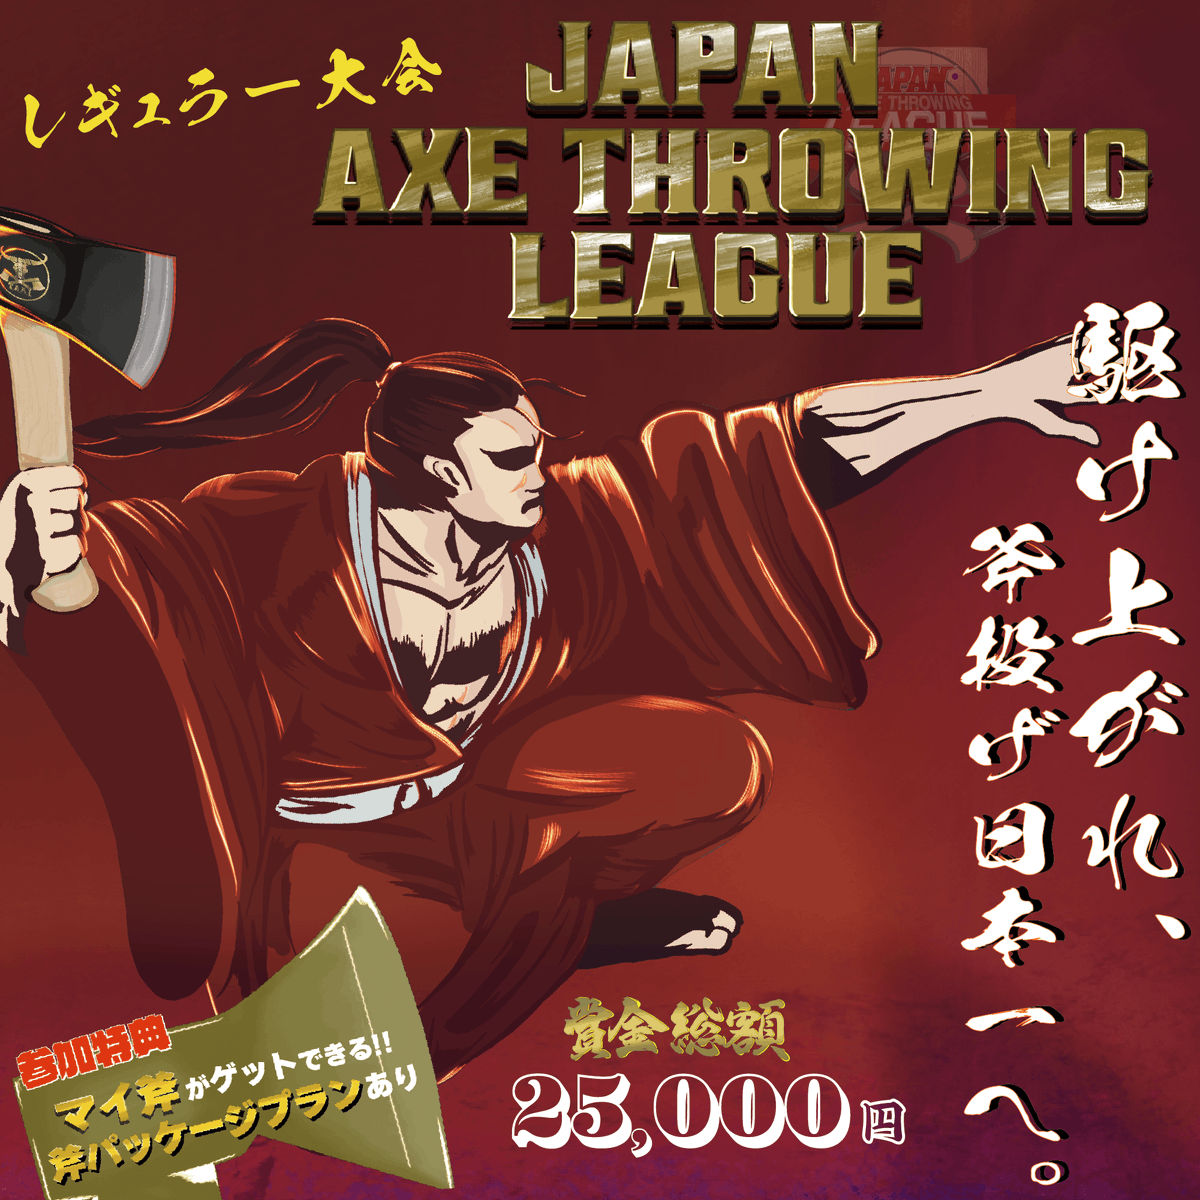 【今月の大会情報】
Japan Axe Throwing League 2023
~駆け上がれ、斧投げ日本一へ。~

申し込みは、下記参加ページより
申込期限は7月16日です。

東京エリア
jatl-0723-tokyo.peatix.com/view

大阪エリア
jatl-0723-osaka.peatix.com/view

愛知エリア
jatl-0723-nagoya.peatix.com/view

#JAAT
#JATL2023
#斧投げ